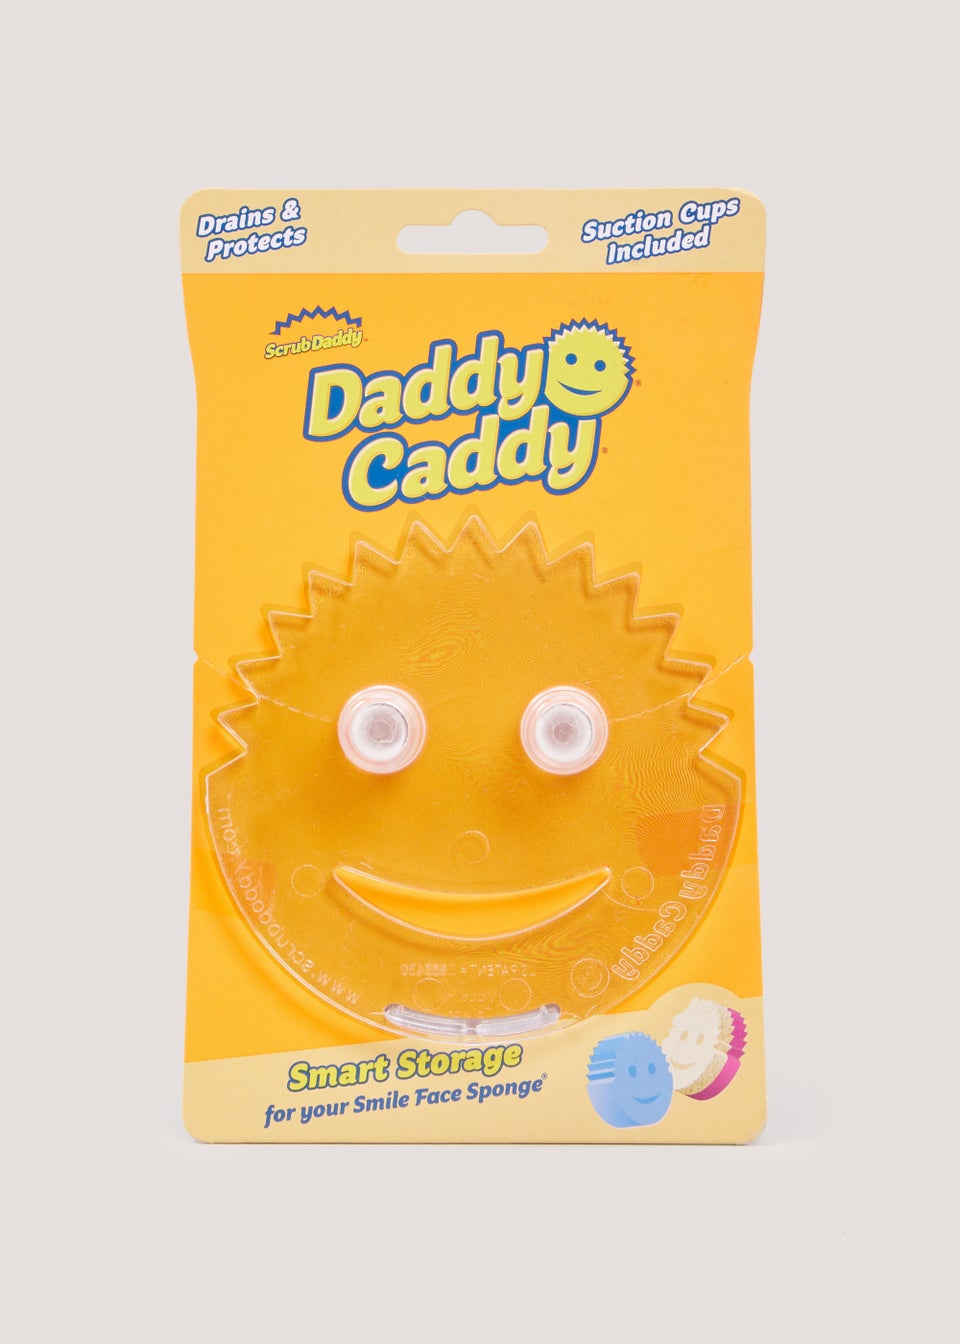  Scrub Daddy Sponge Holder - Daddy Caddy - Sink Sponge